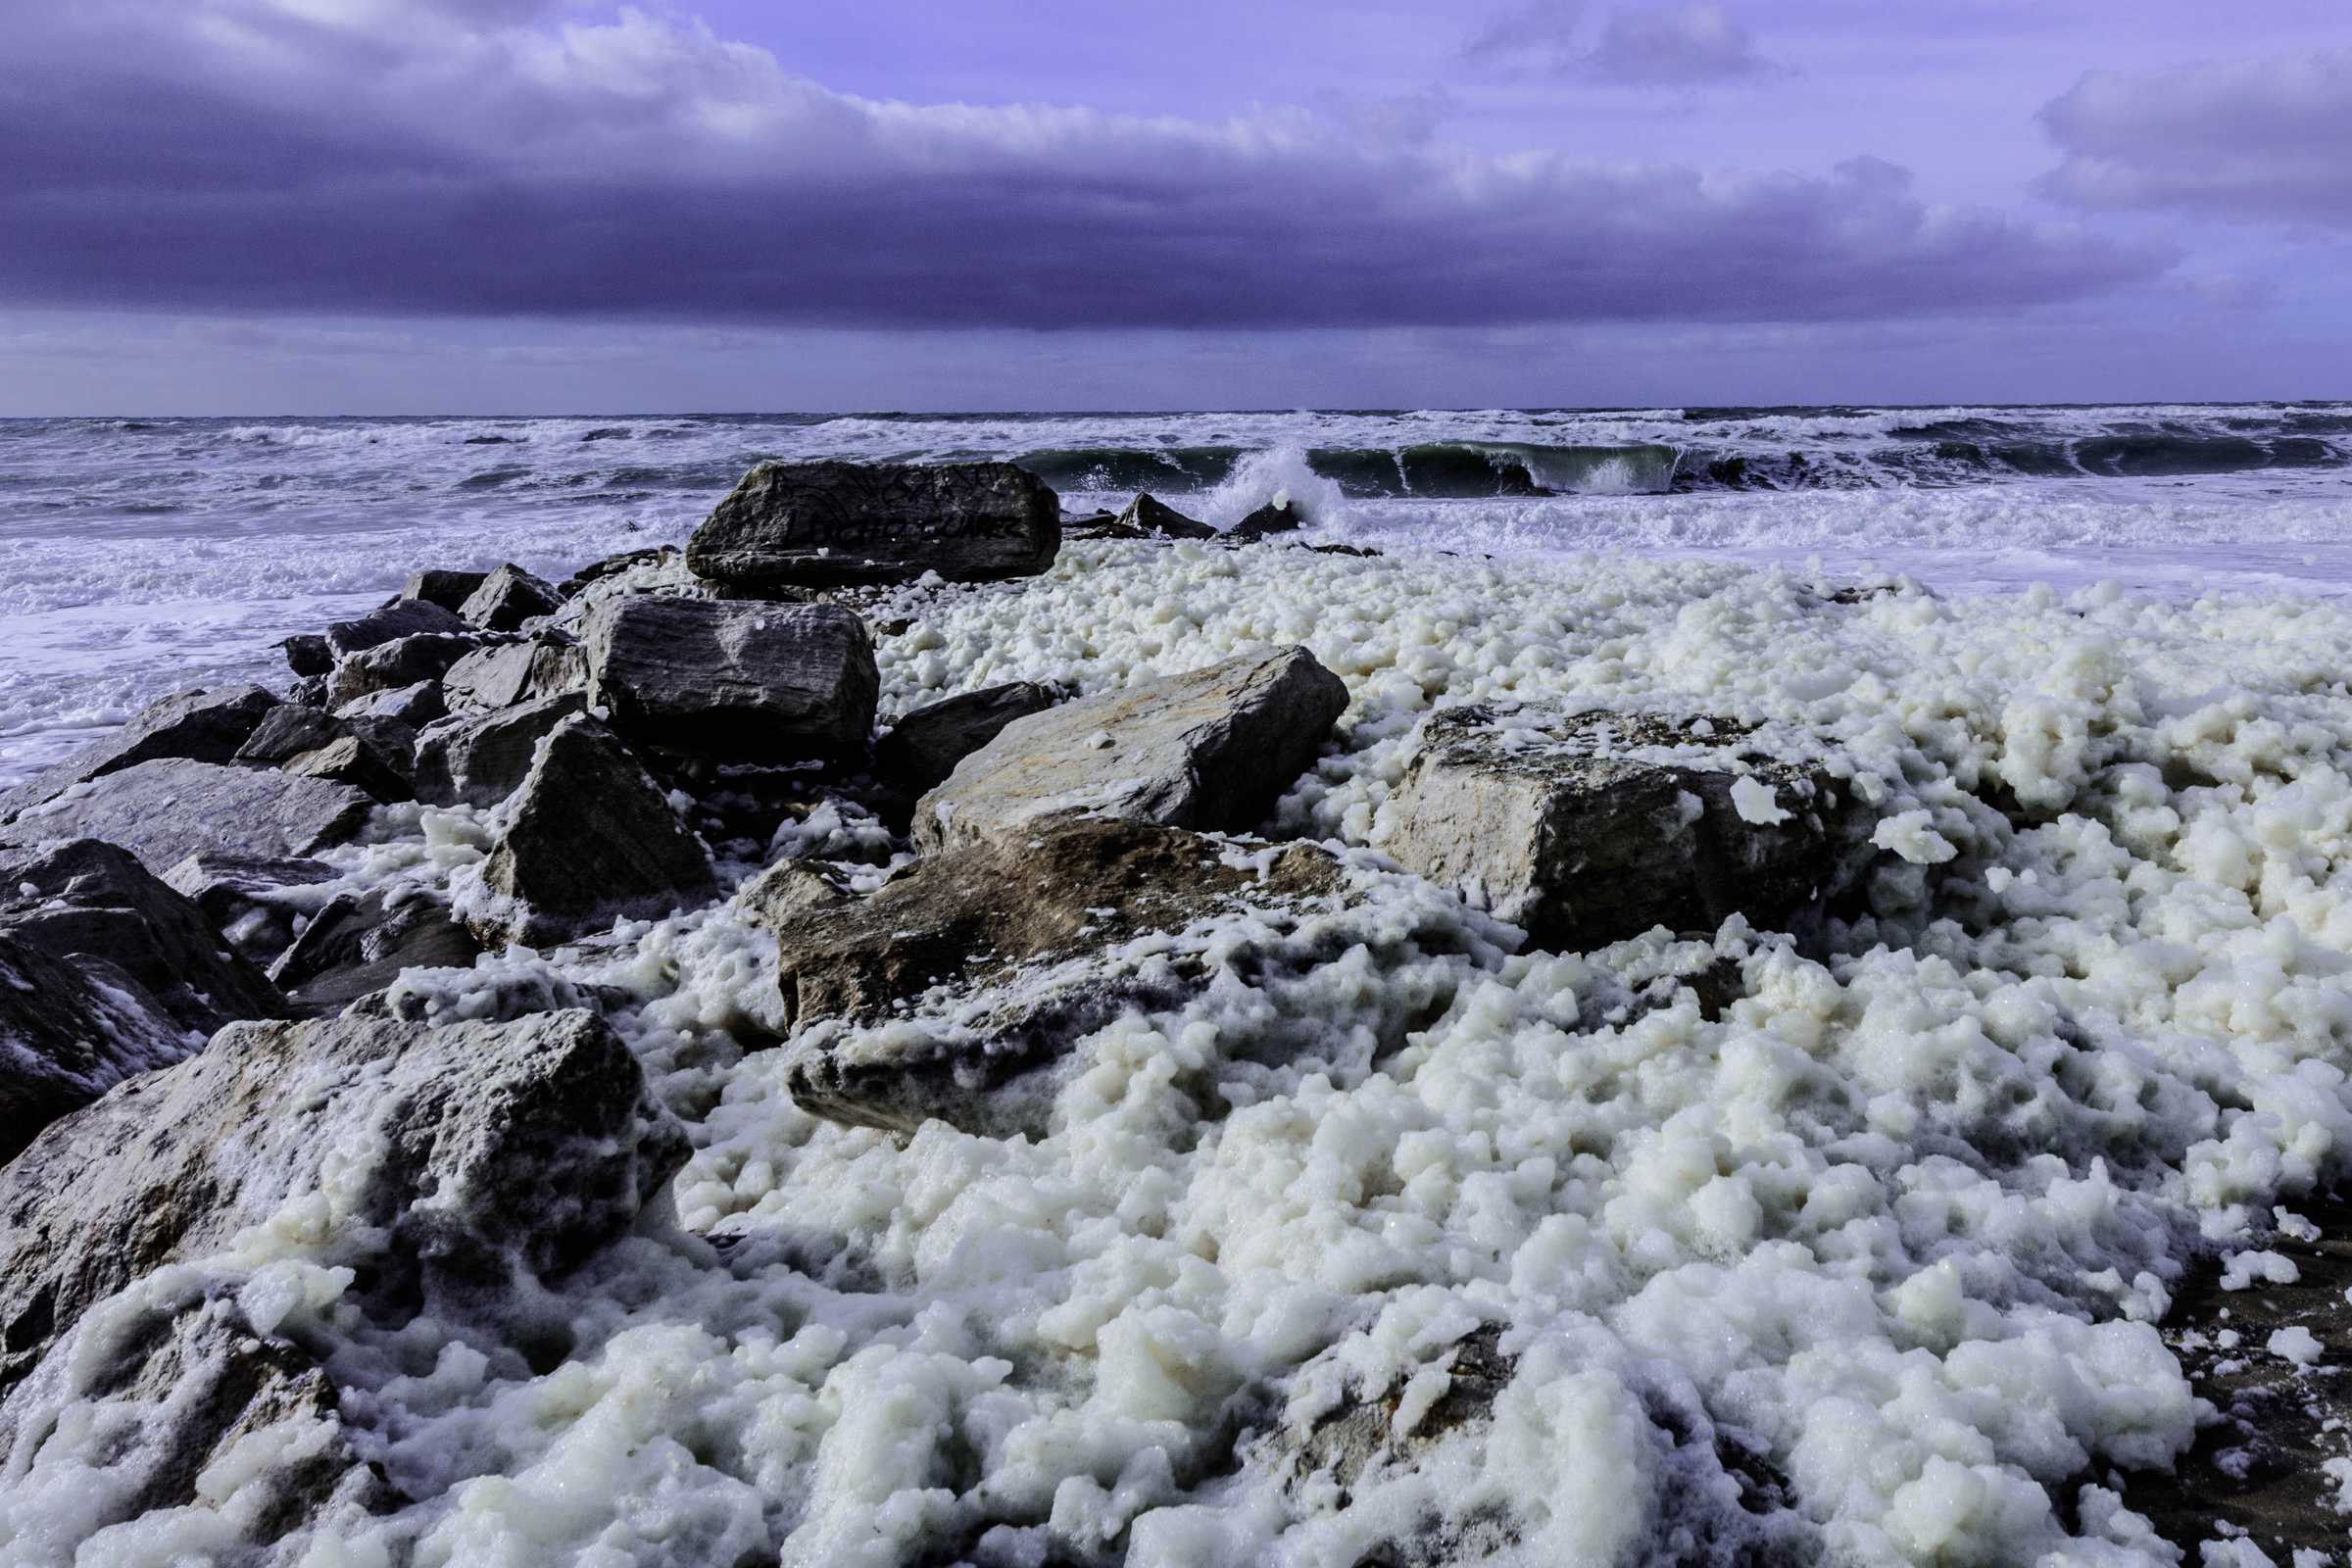 Sea foam on rocks. Photo: Rodrigo Feldman Ruiz.